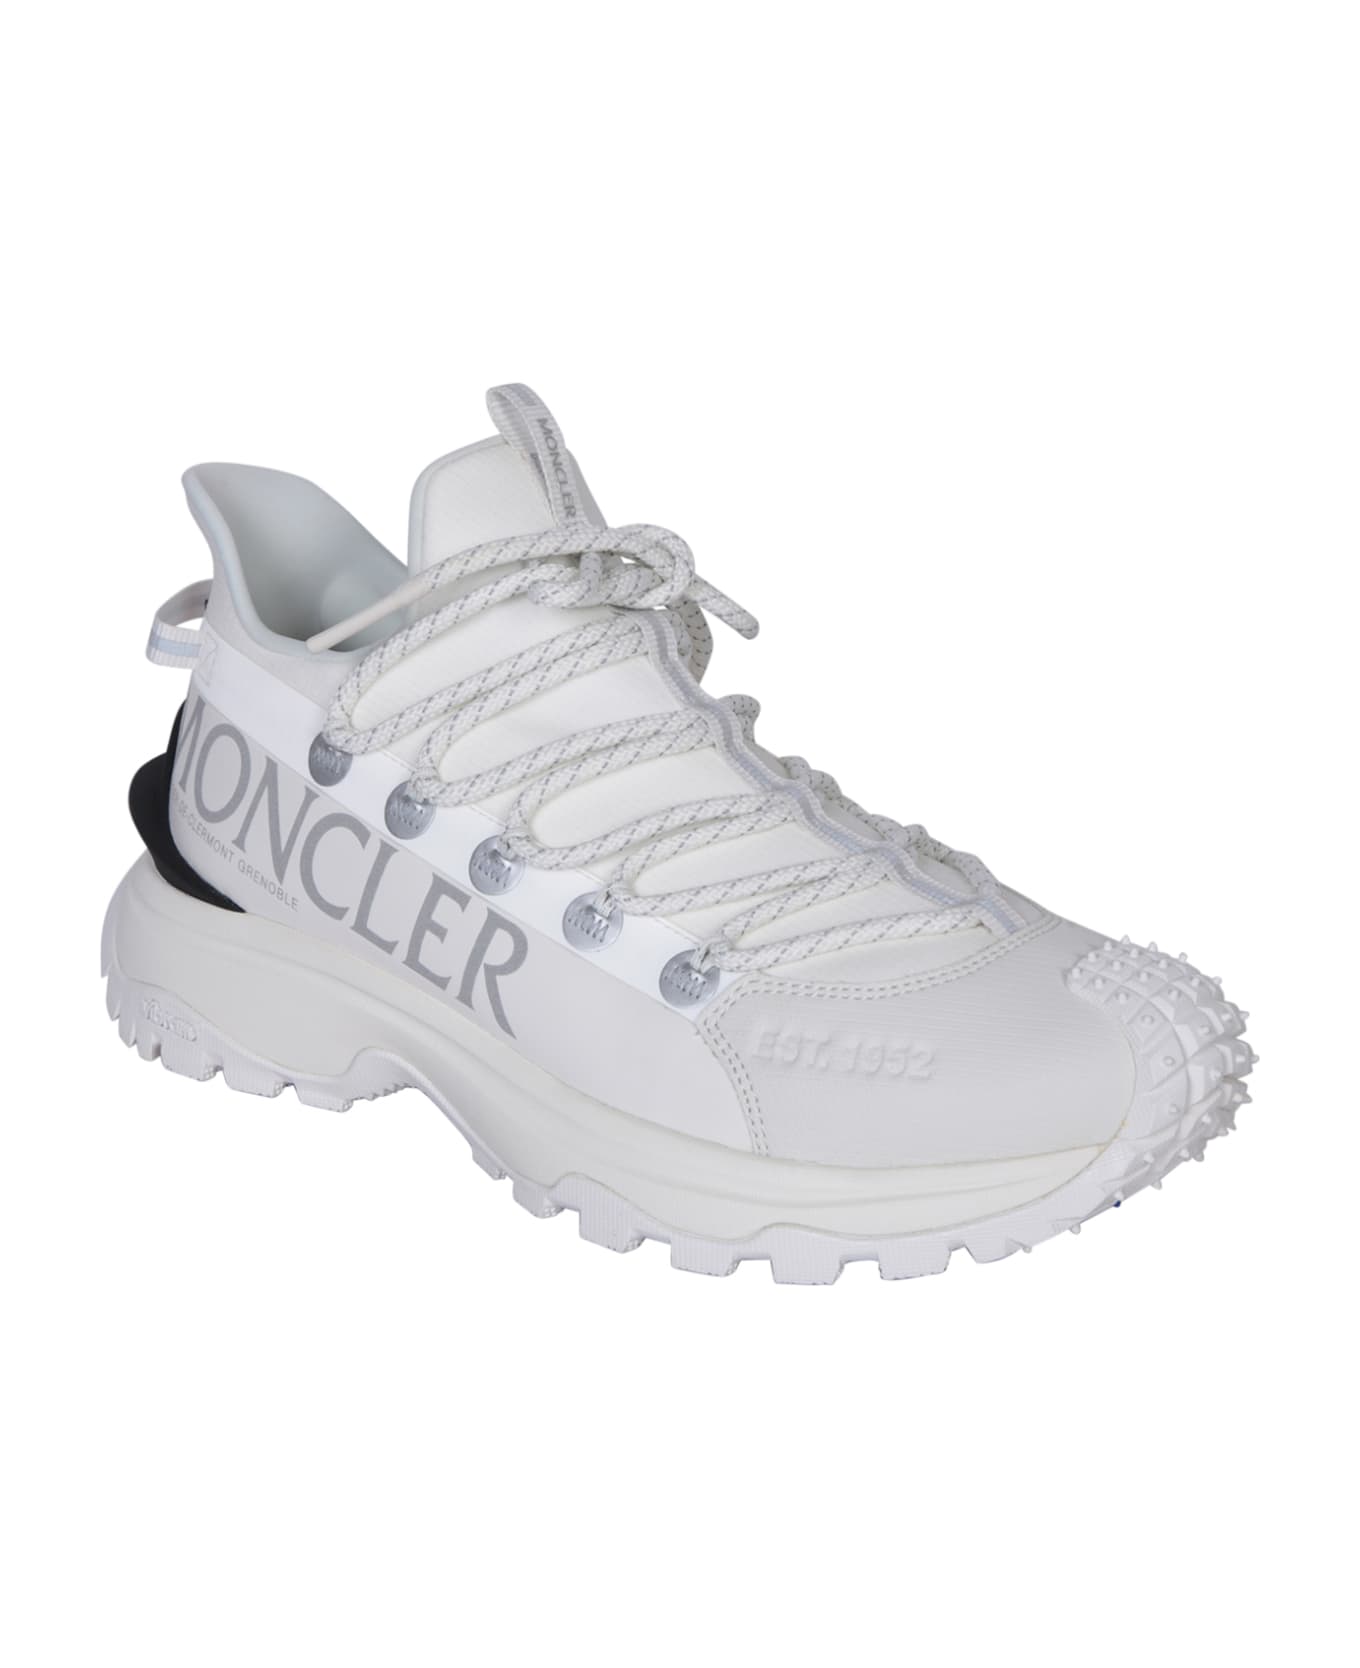 Moncler White Trailgrip Lite 2 Sneakers - White スニーカー